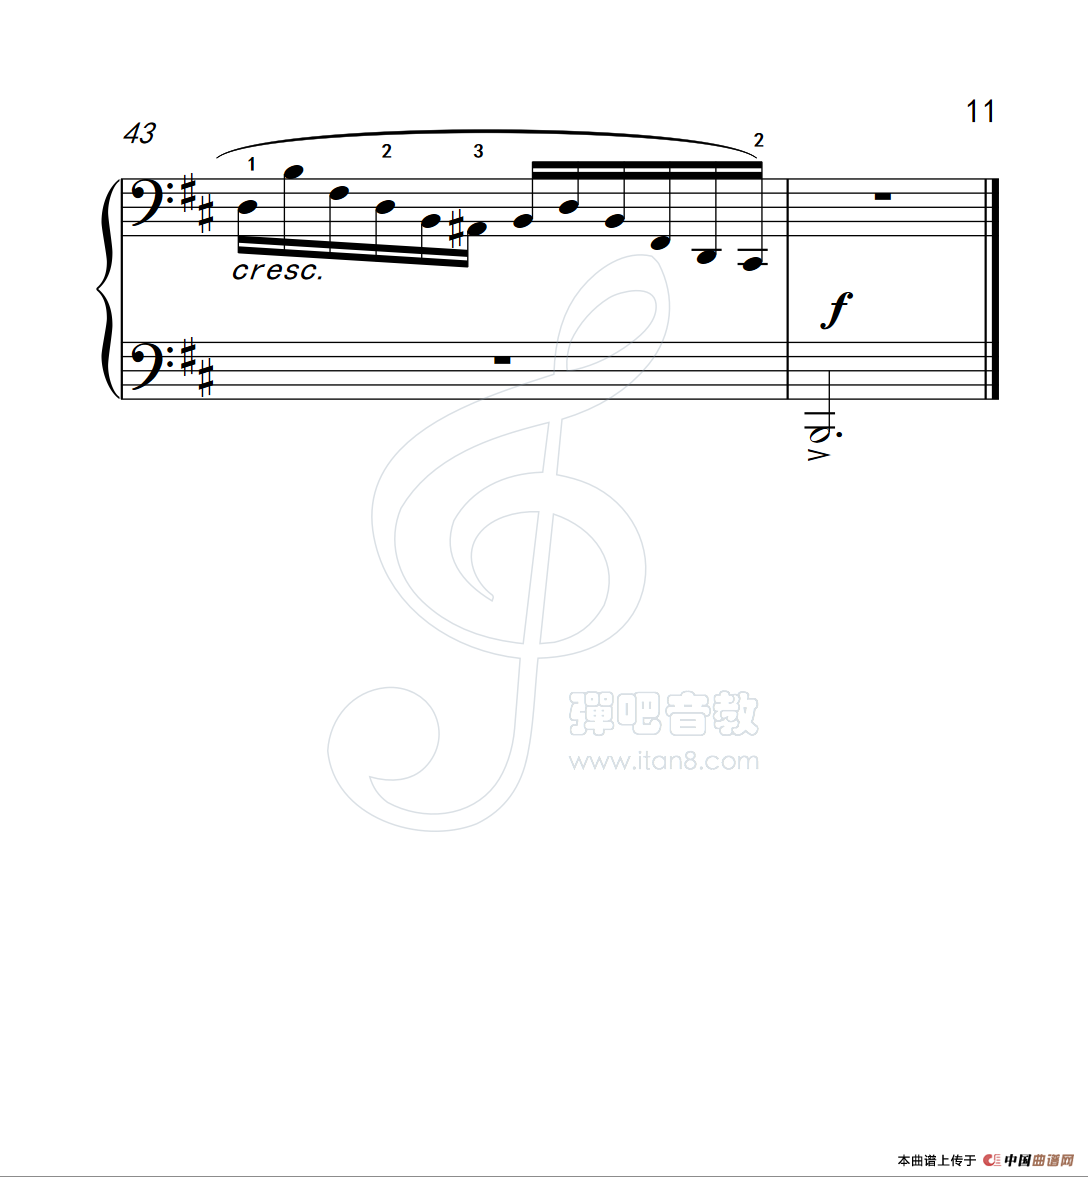 《练习曲 16》钢琴曲谱图分享